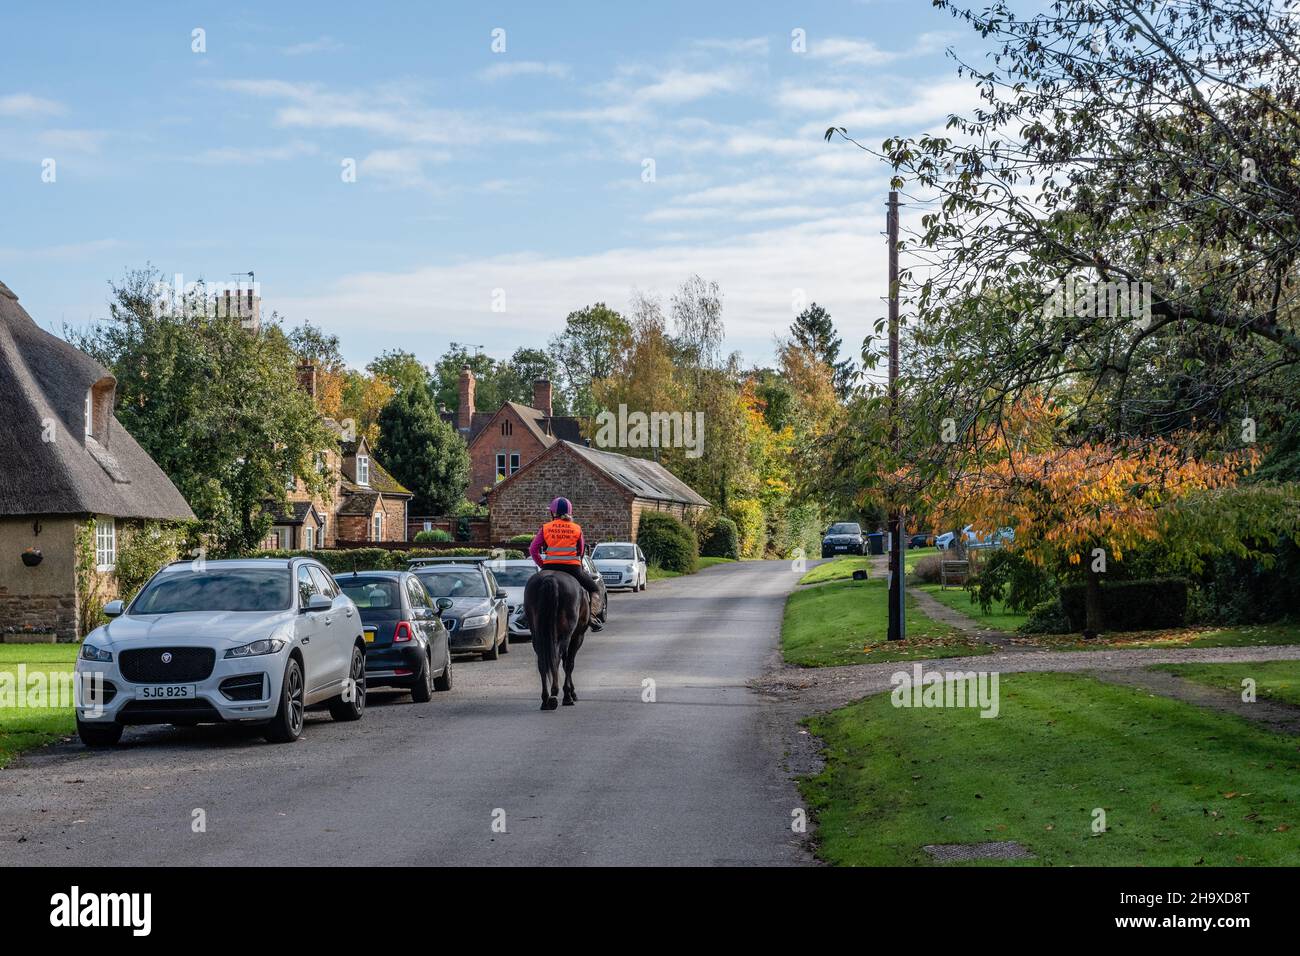 Scena stradale, con case di paglia, nel grazioso villaggio di Ashby St Ledgers, Northamptonshire, Regno Unito; cavaliere nel centro della strada Foto Stock